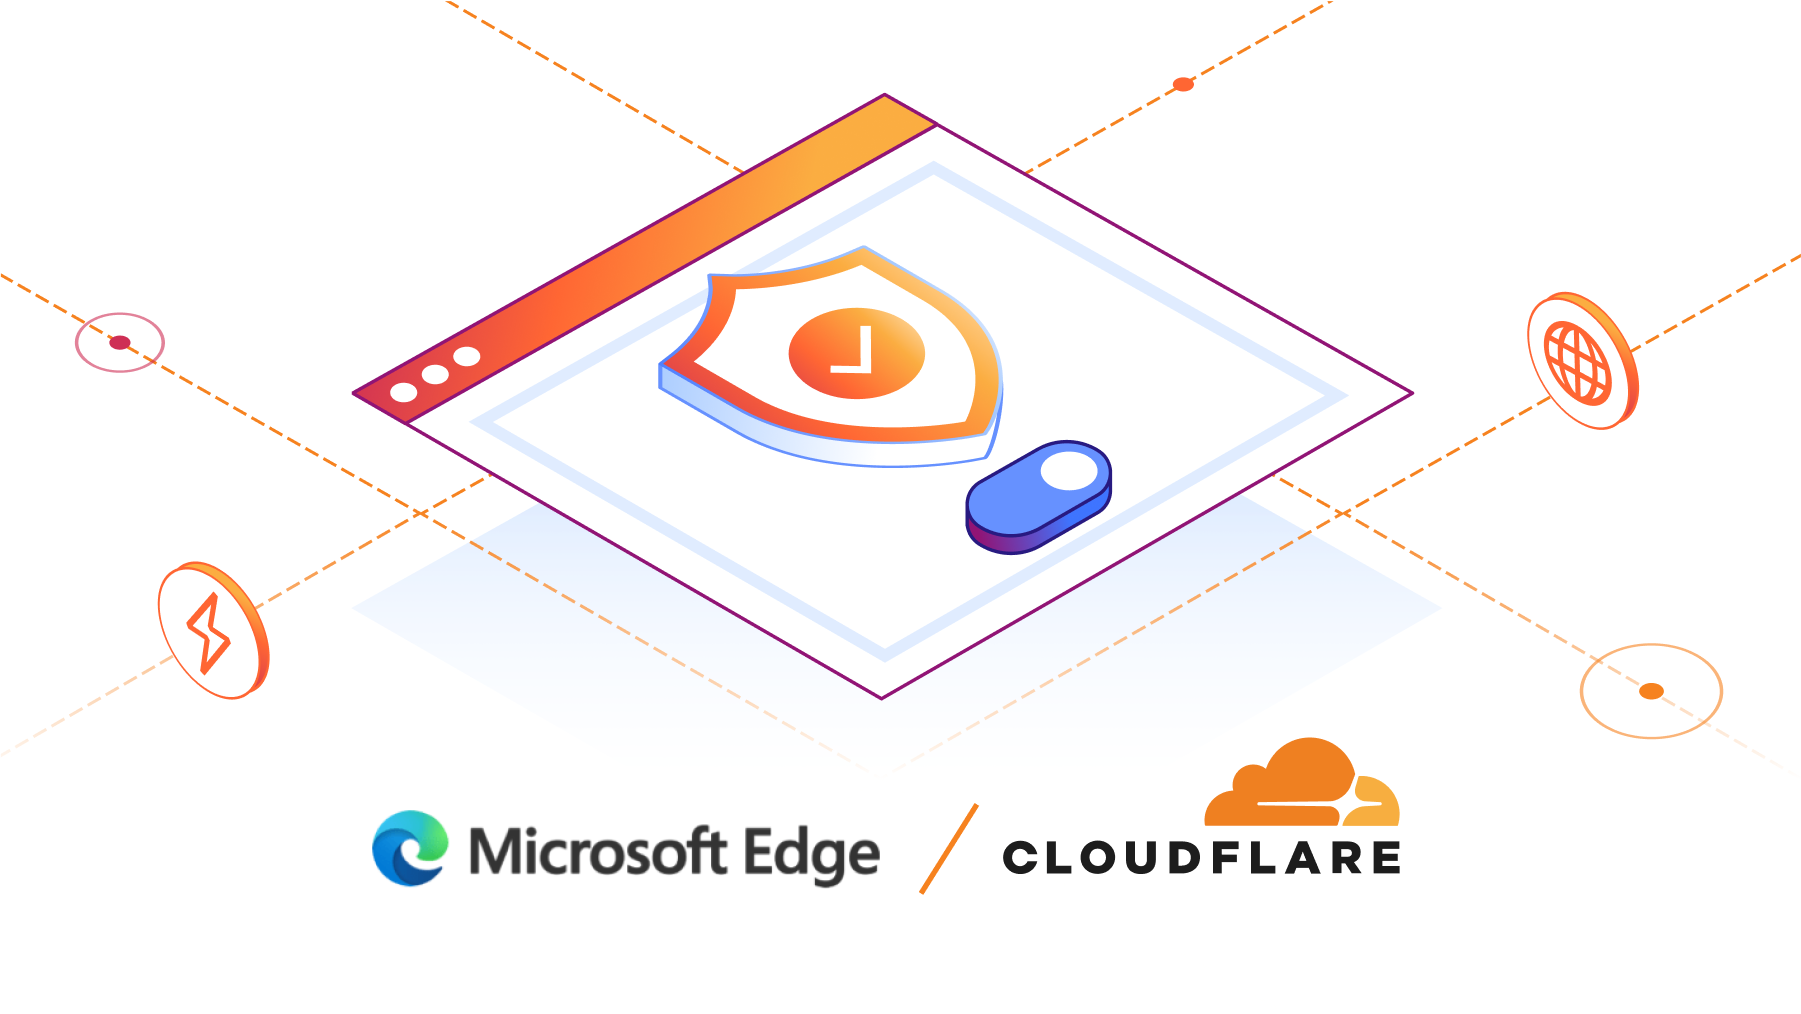 Cloudflare betreibt jetzt das Microsoft Edge Secure Network
